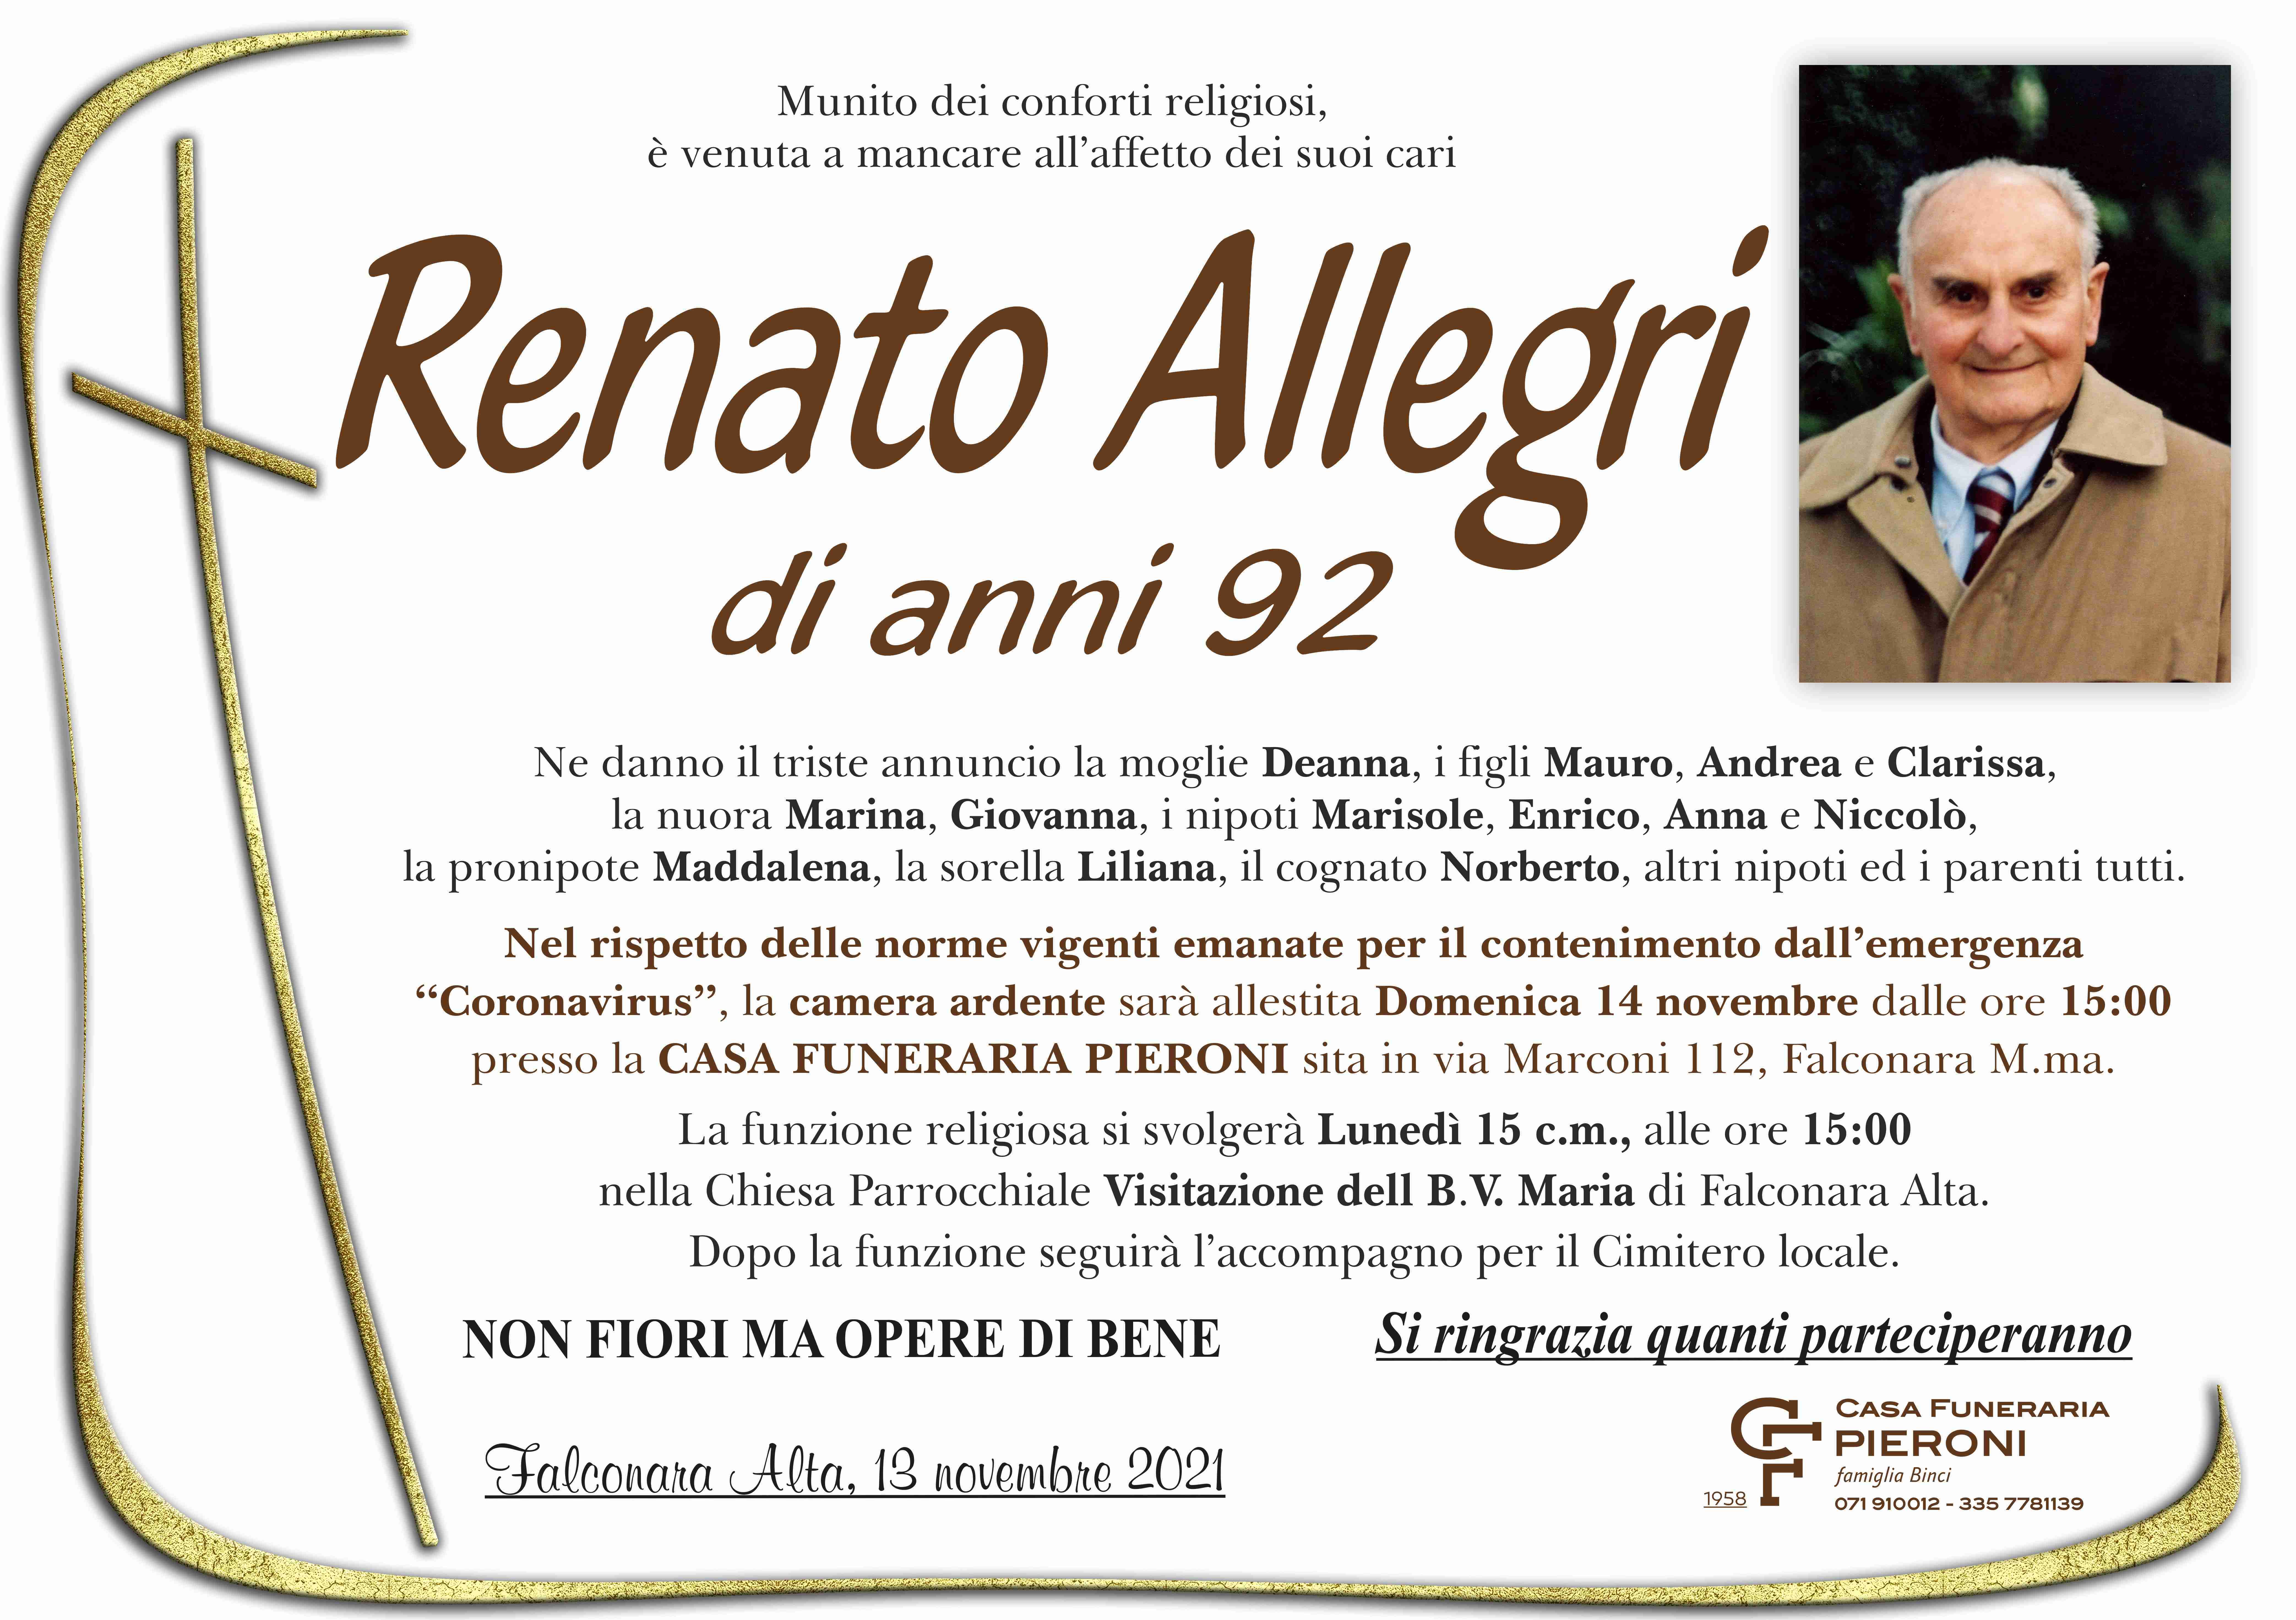 Renato Allegri